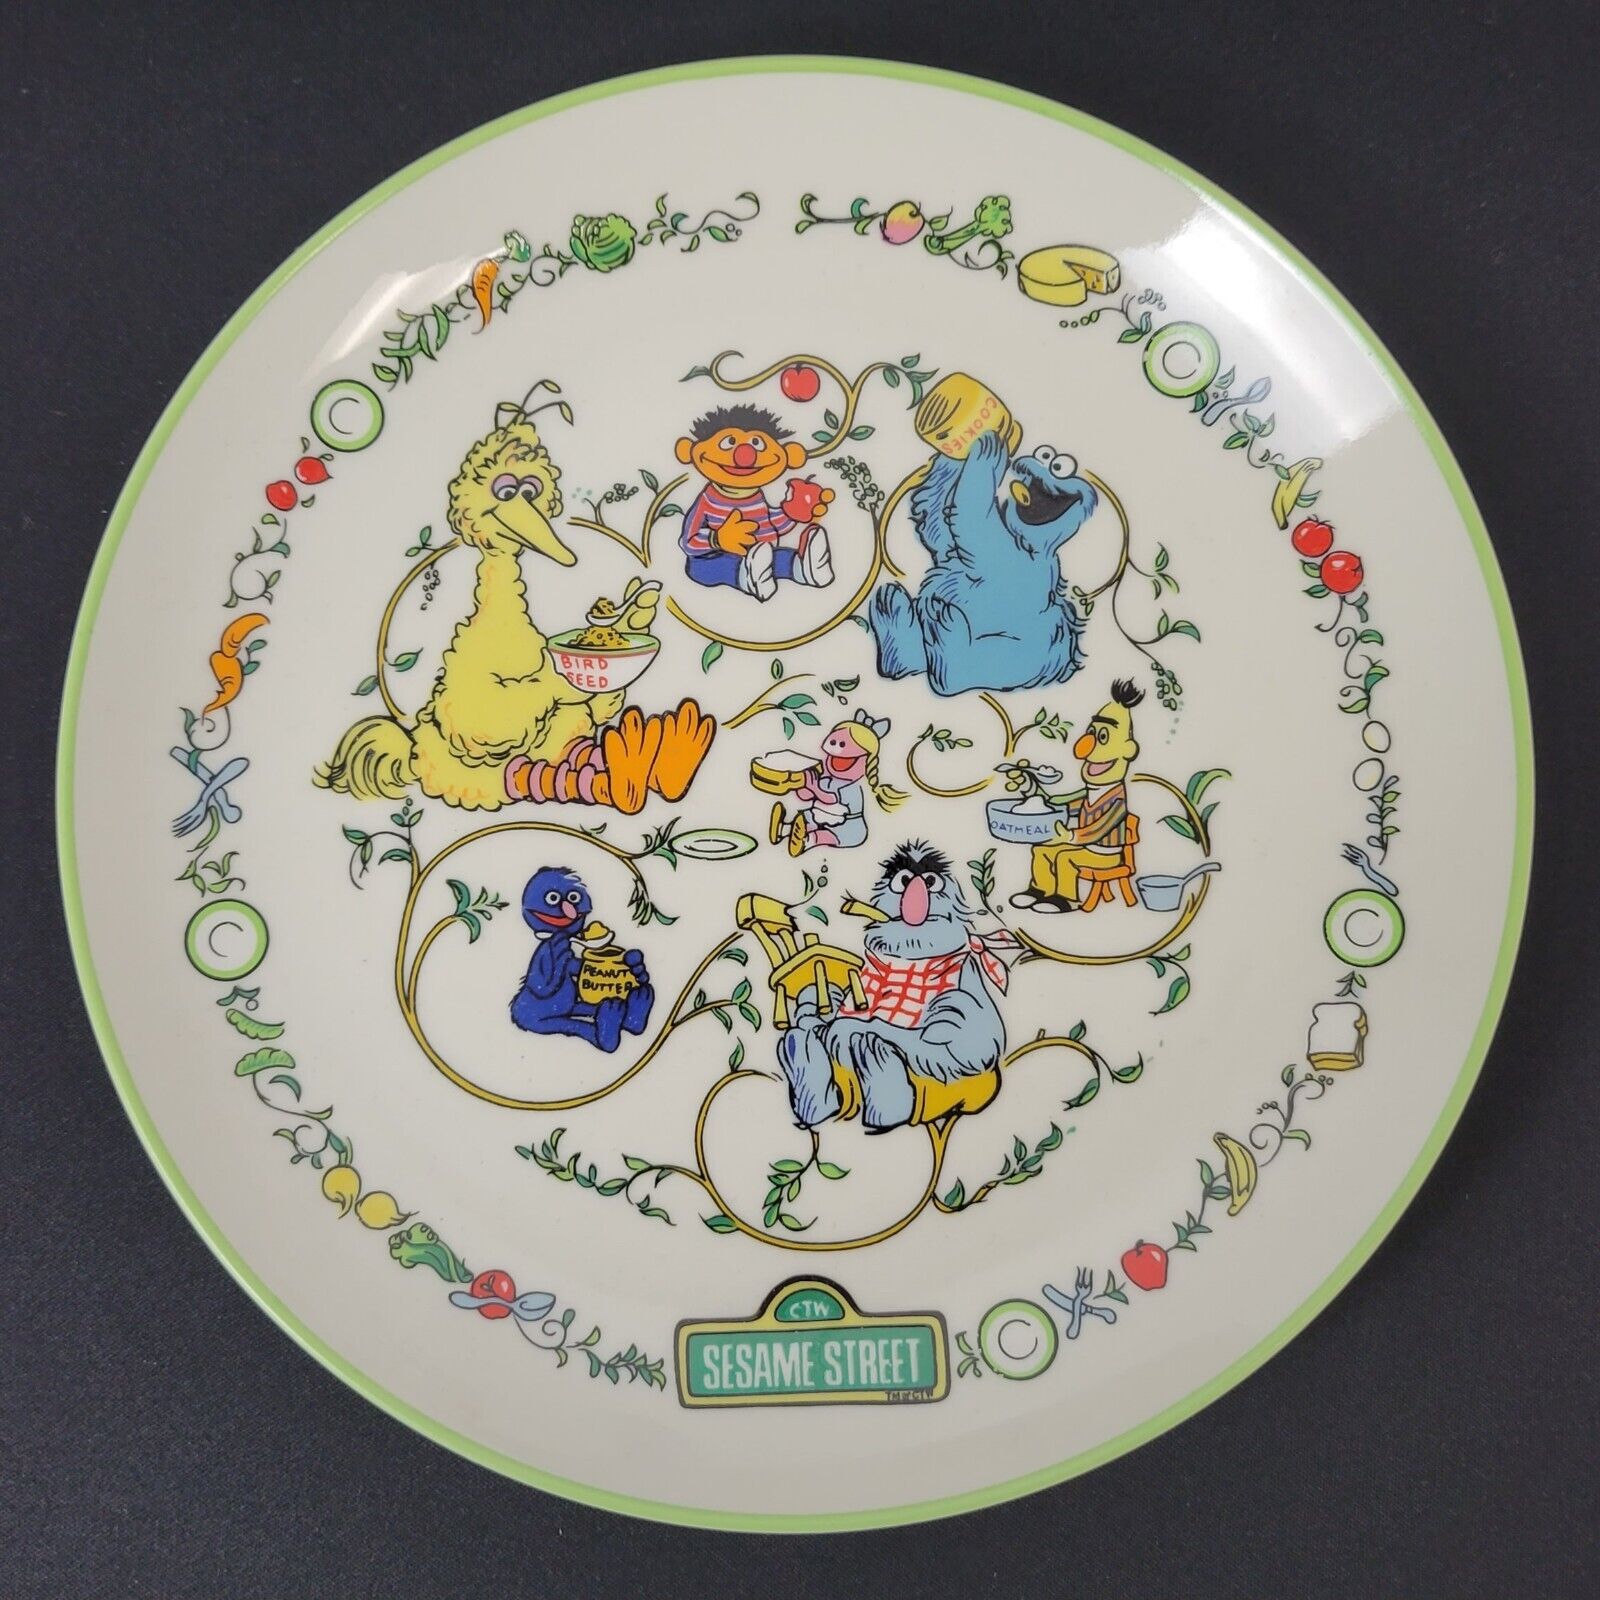 1976 Vintage Sesame Street Plate Gorham Fine China Muppets Big Bird Bert Ernie